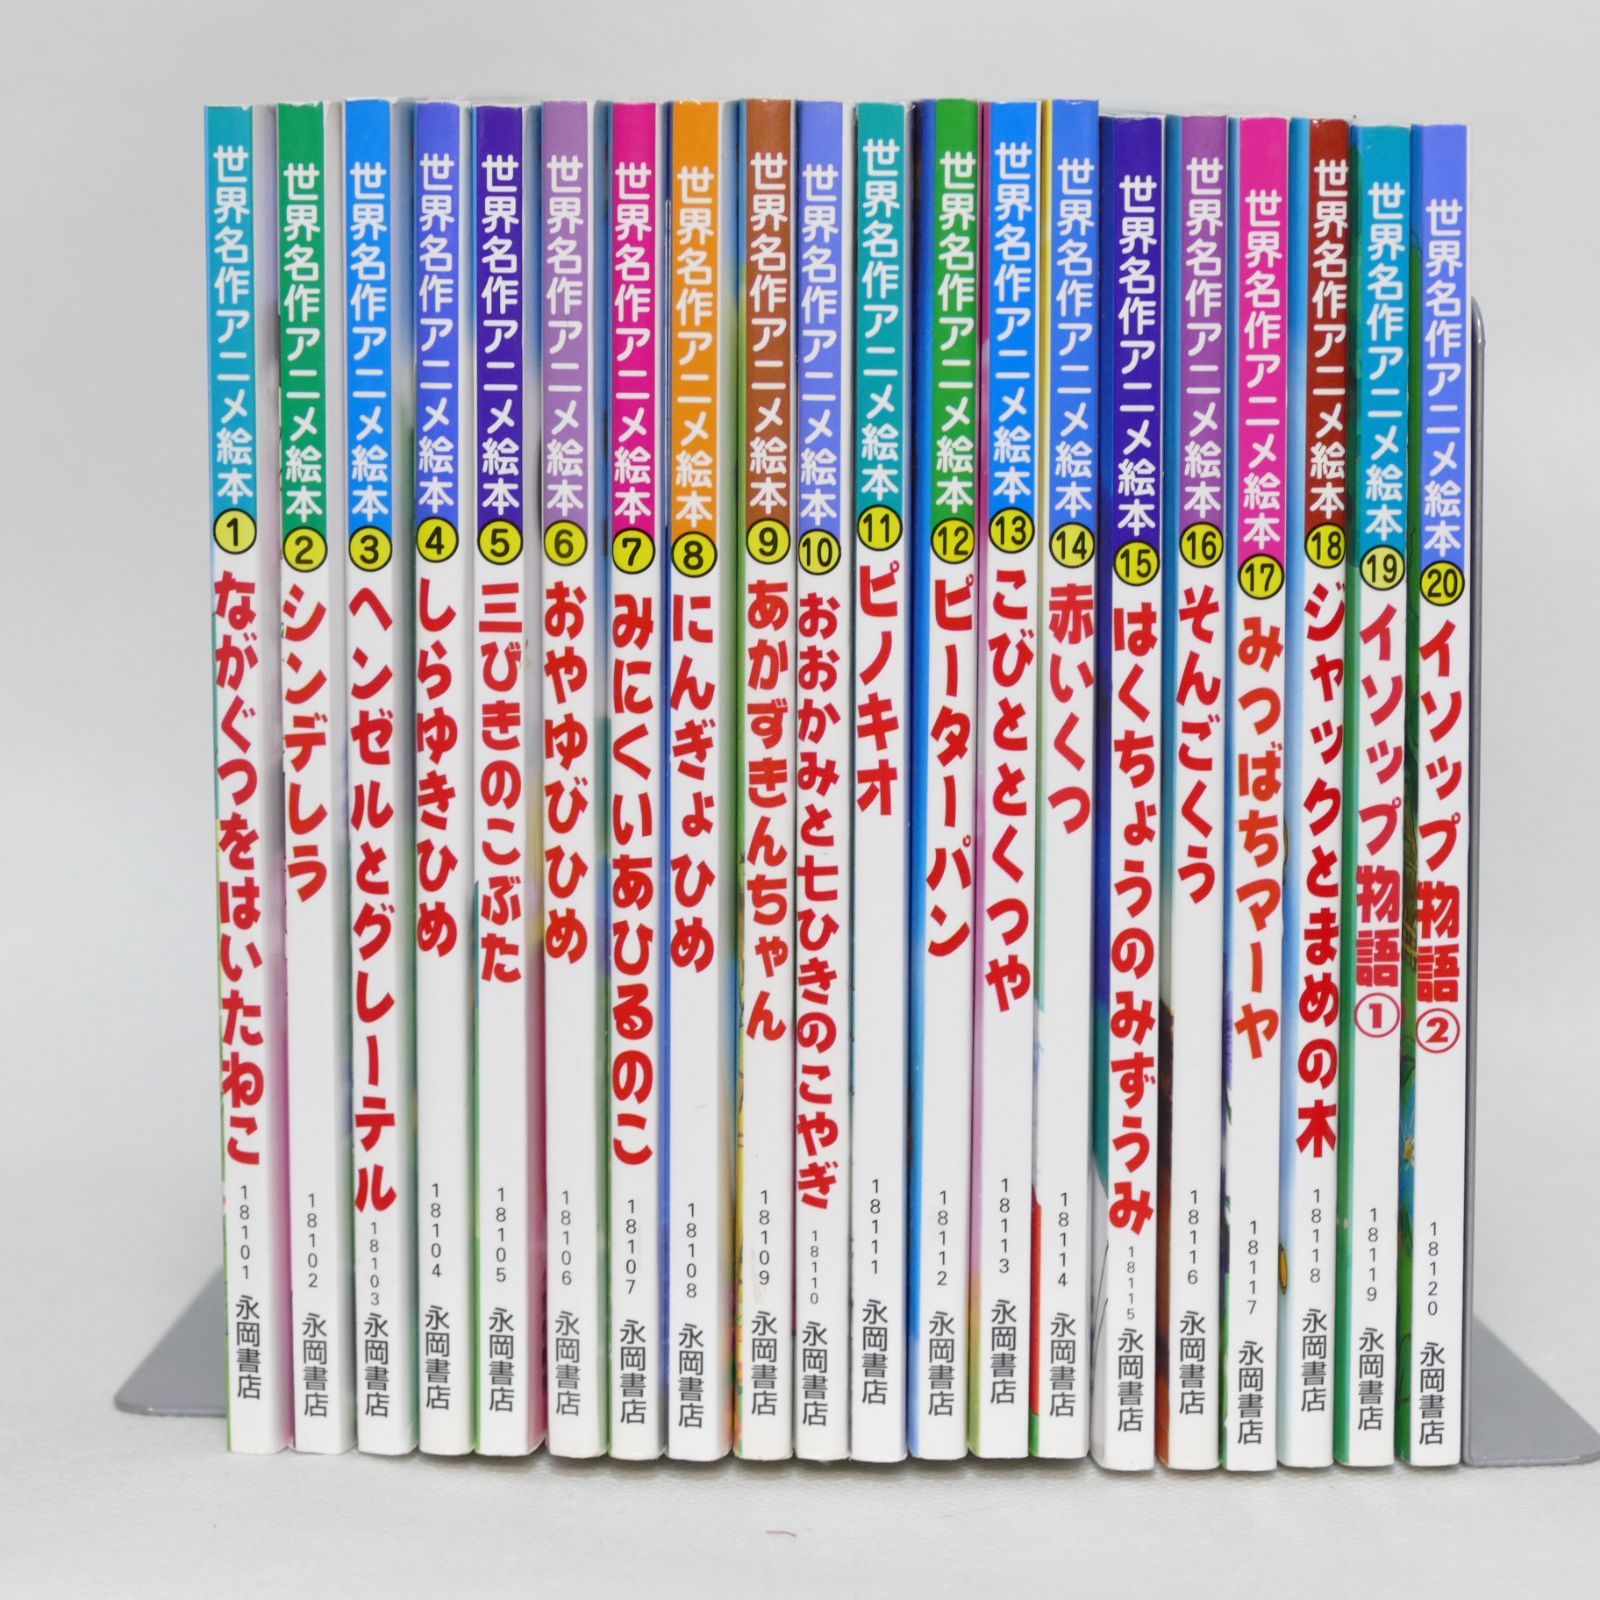 日本昔ばなしアニメ絵本 全18巻 世界名作アニメ絵本 全40巻 全巻58巻セット